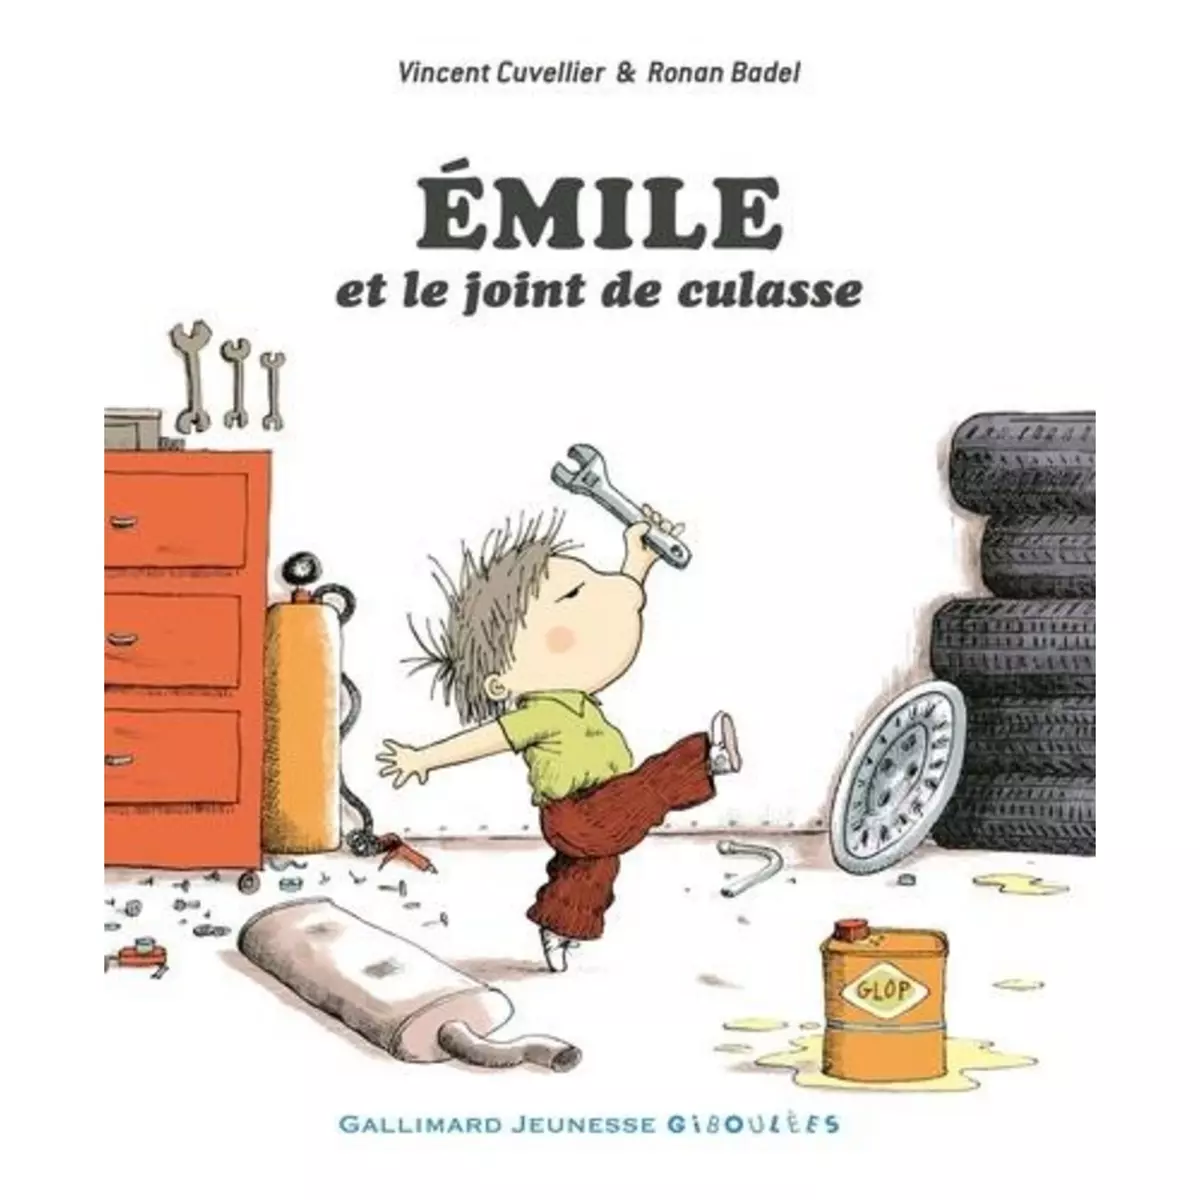  EMILE : EMILE ET LE JOINT DE CULASSE, Cuvellier Vincent